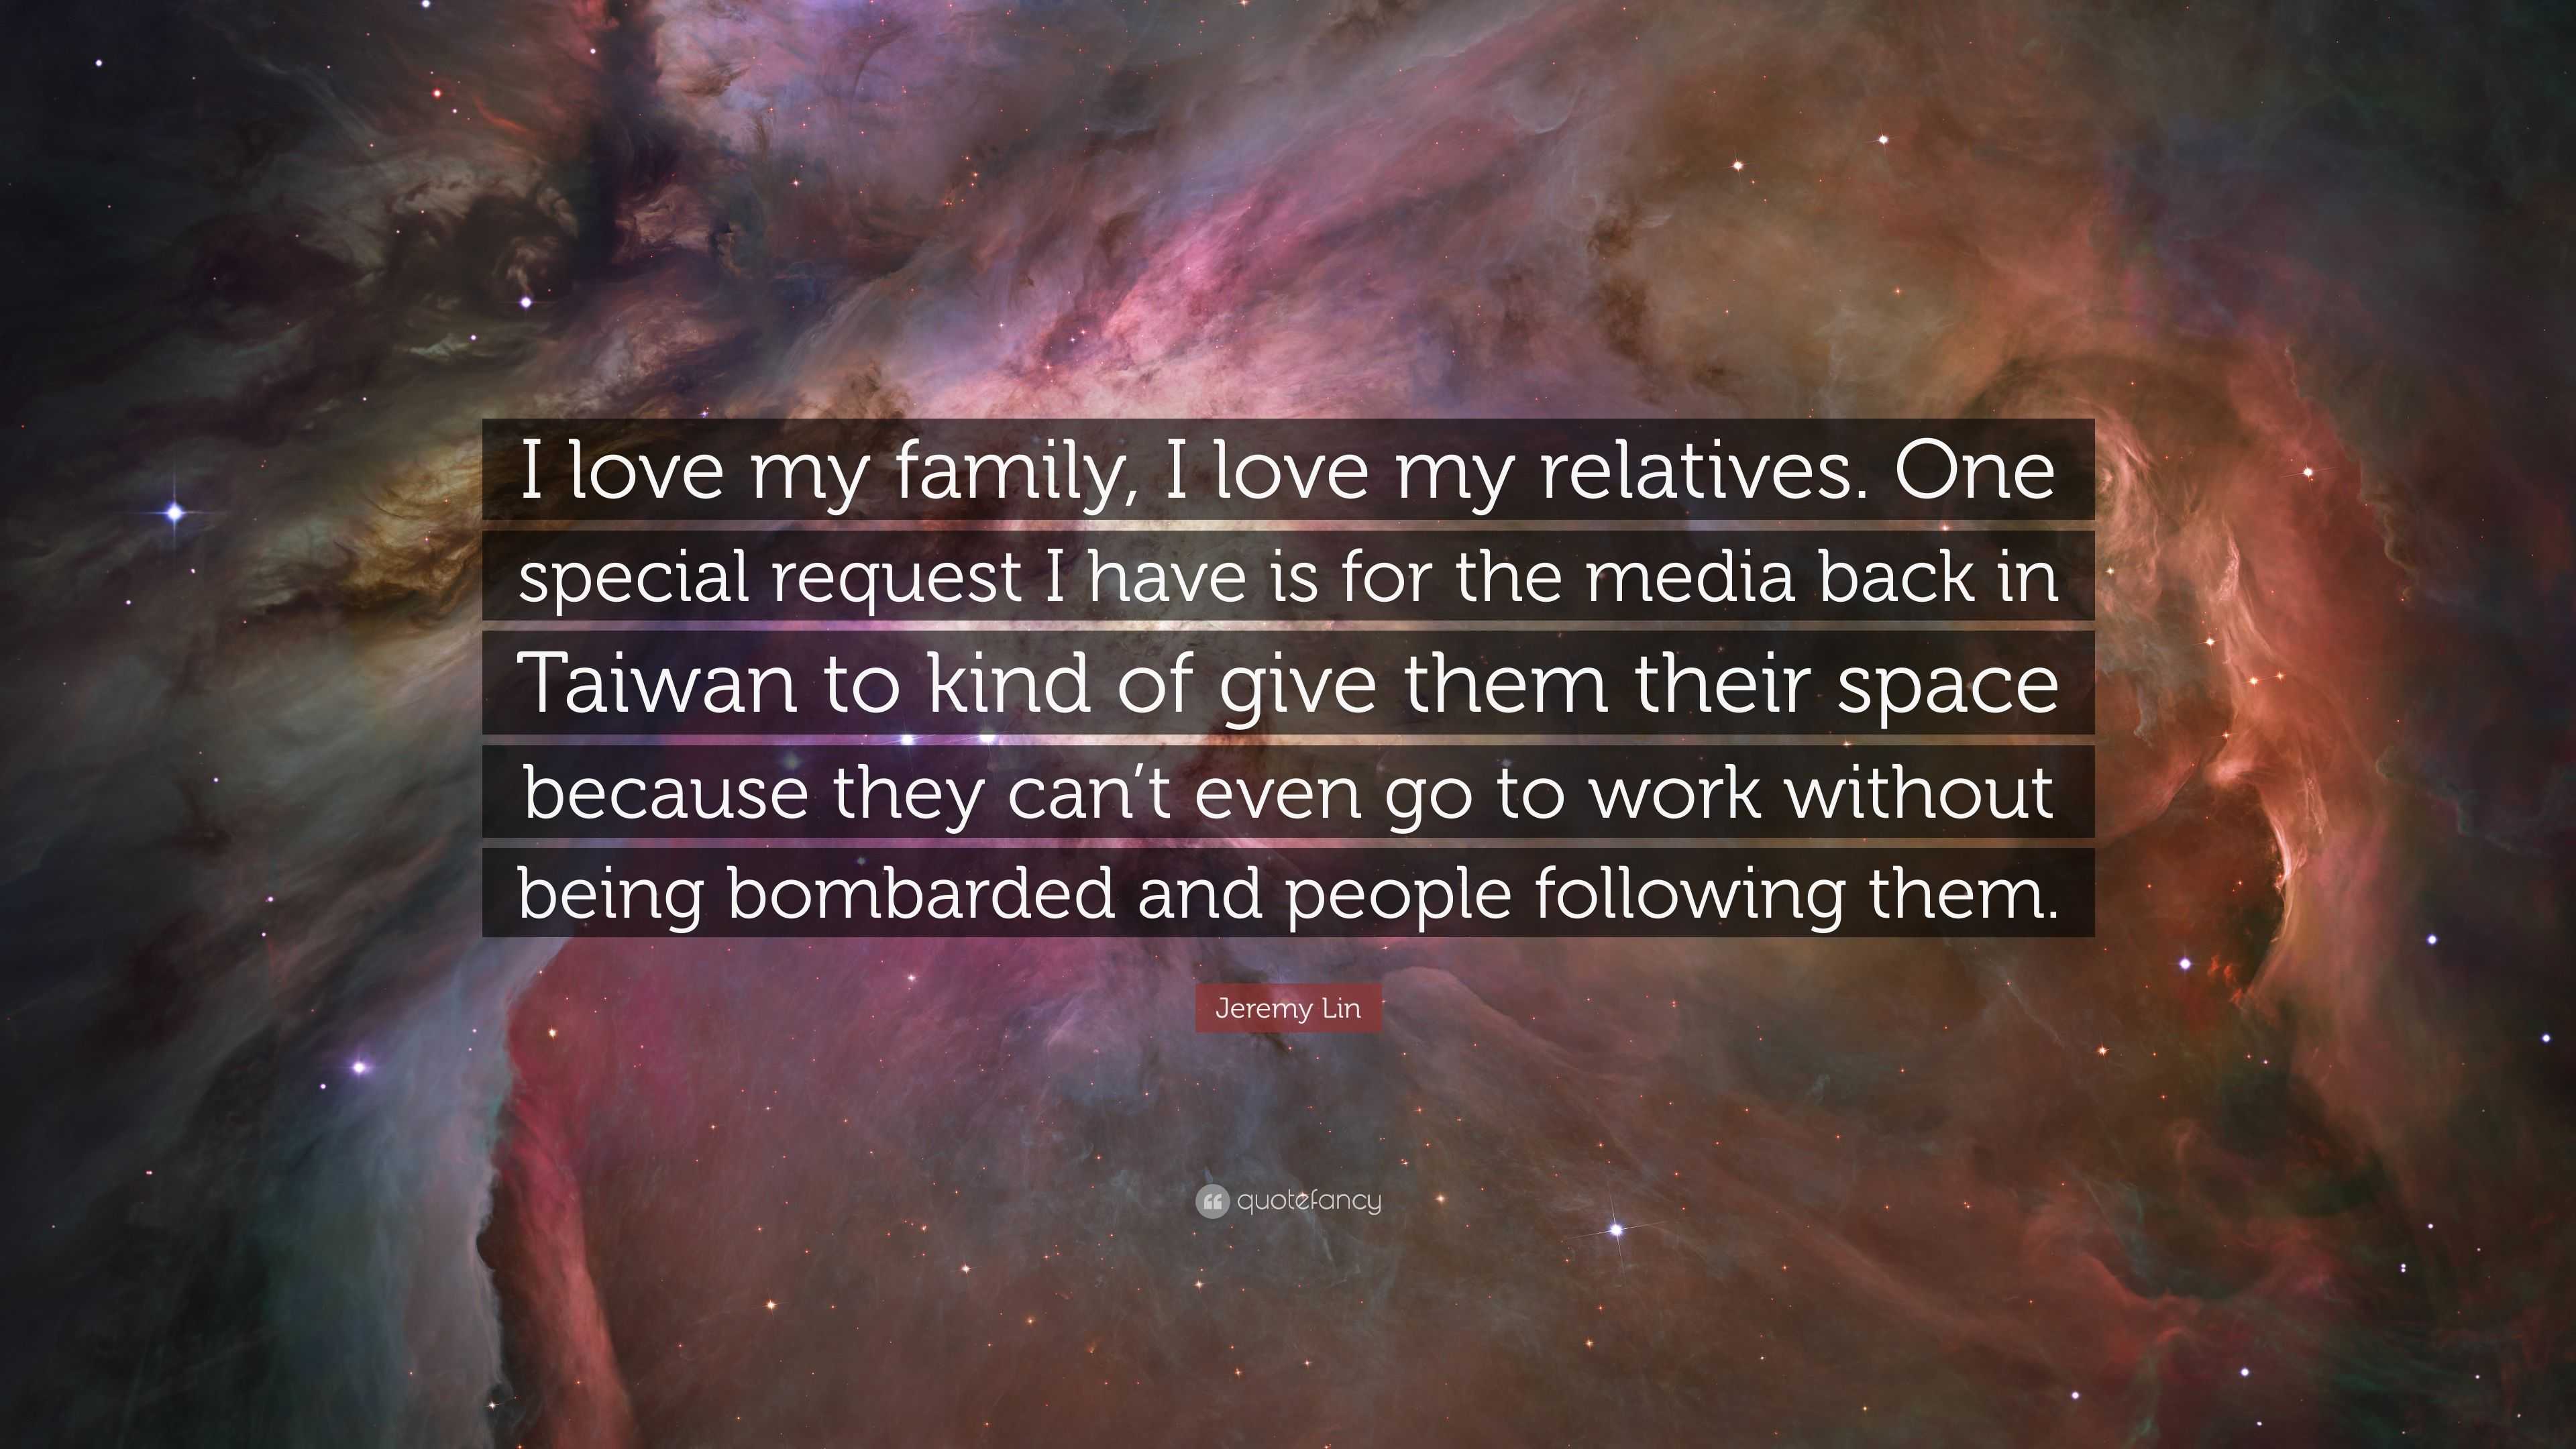 Jeremy Lin Quote “I love my family I love my relatives e